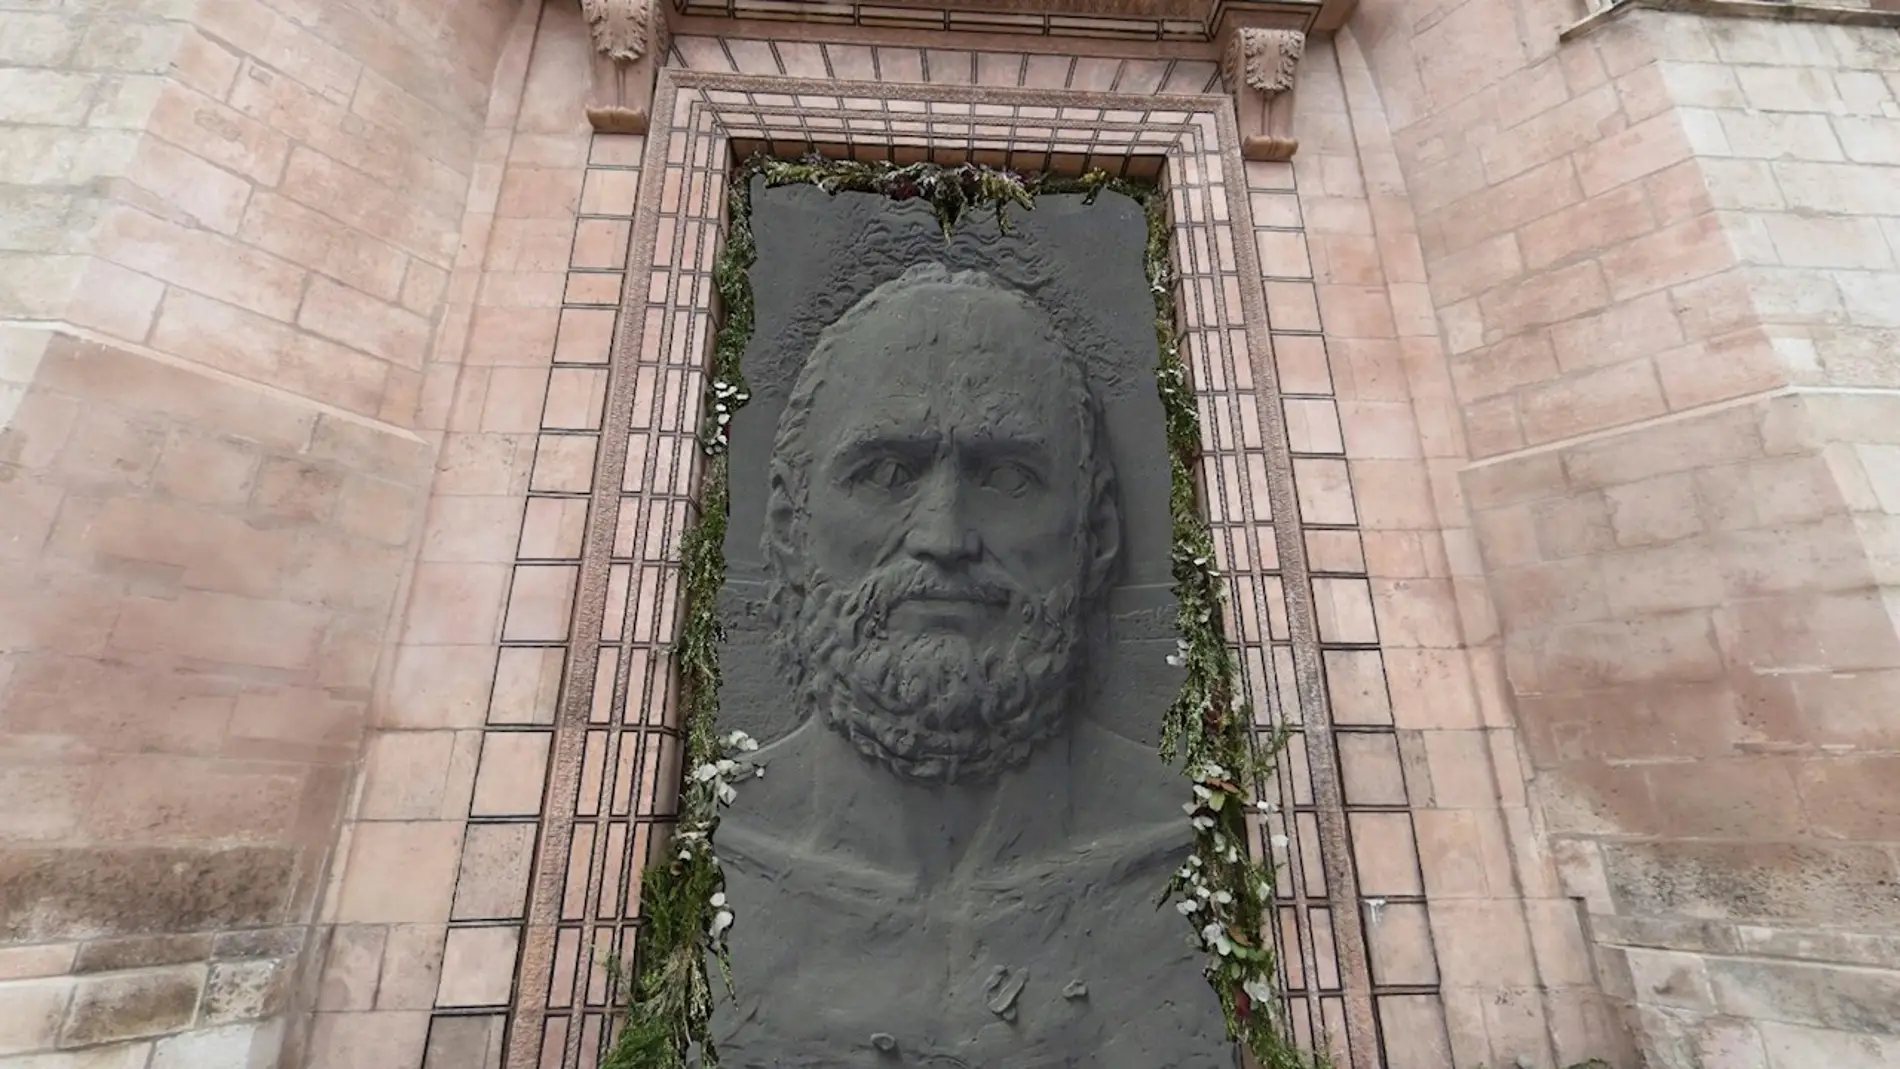  Representación artística de una de las nuevas puertas de bronce que se planea colocar en la fachada principal de la catedral de Burgos, decoradas por Antonio López en clave de arte contemporáneo